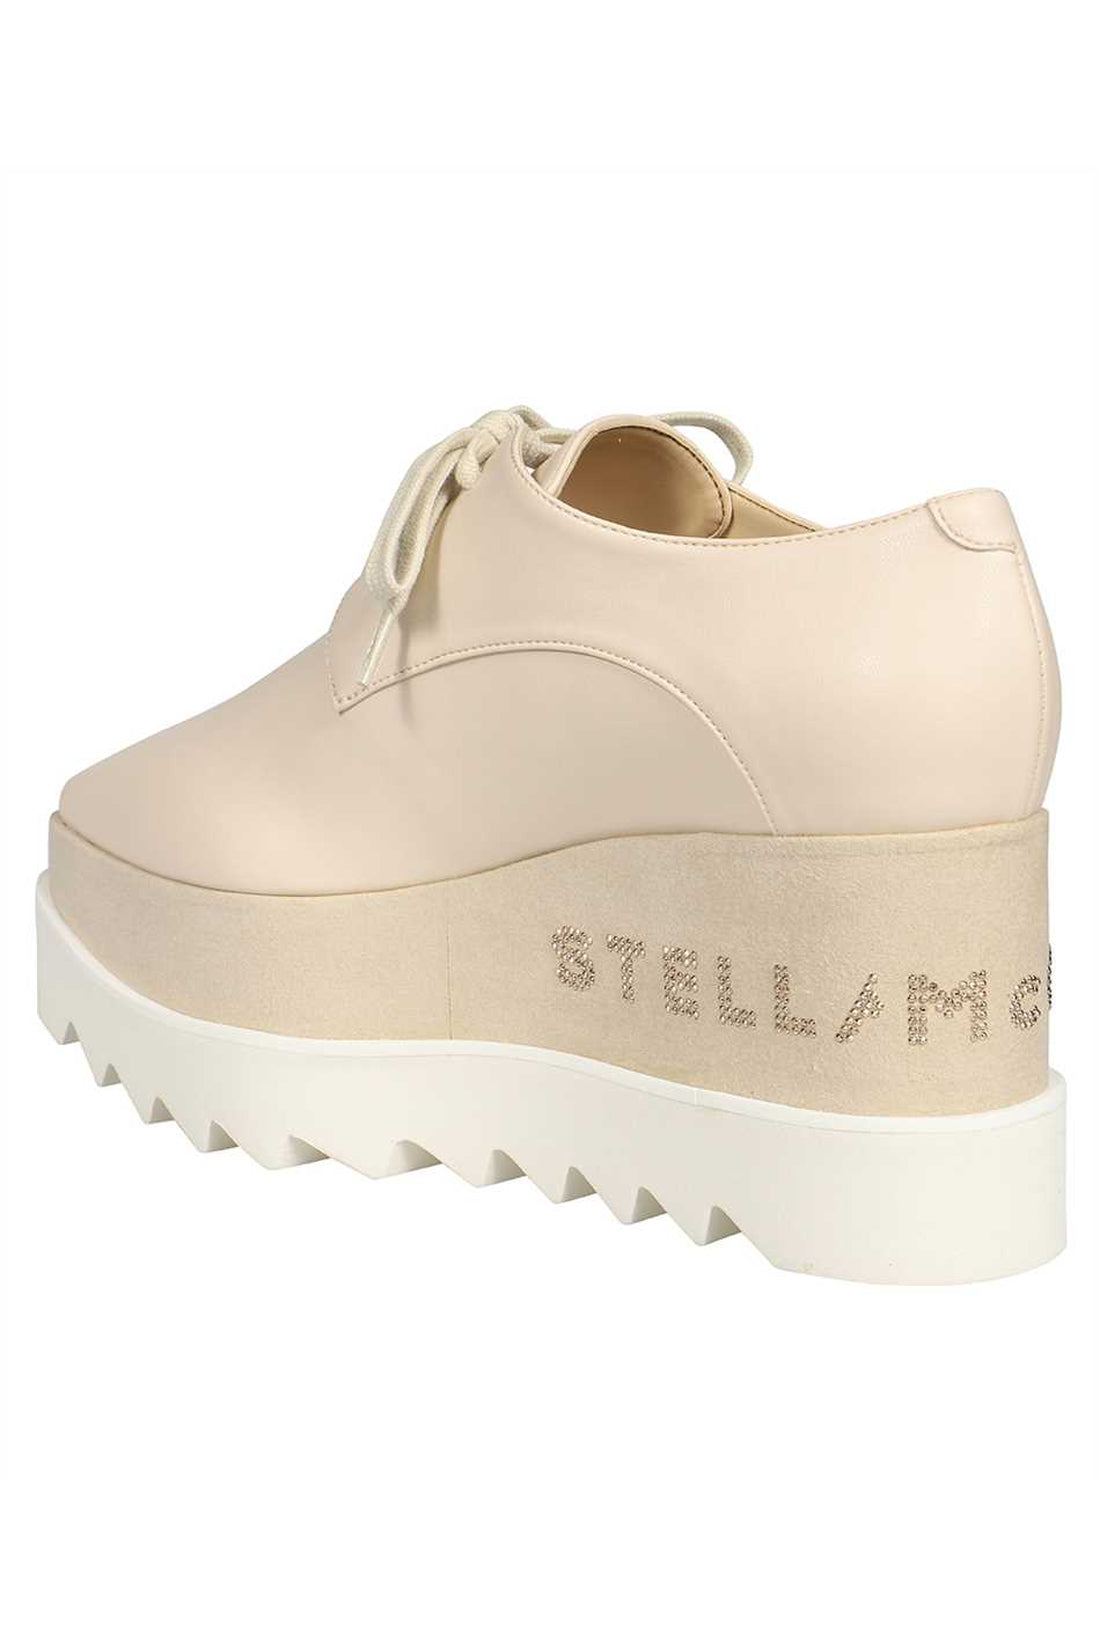 Stella McCartney-OUTLET-SALE-Elyse lace-up shoes-ARCHIVIST